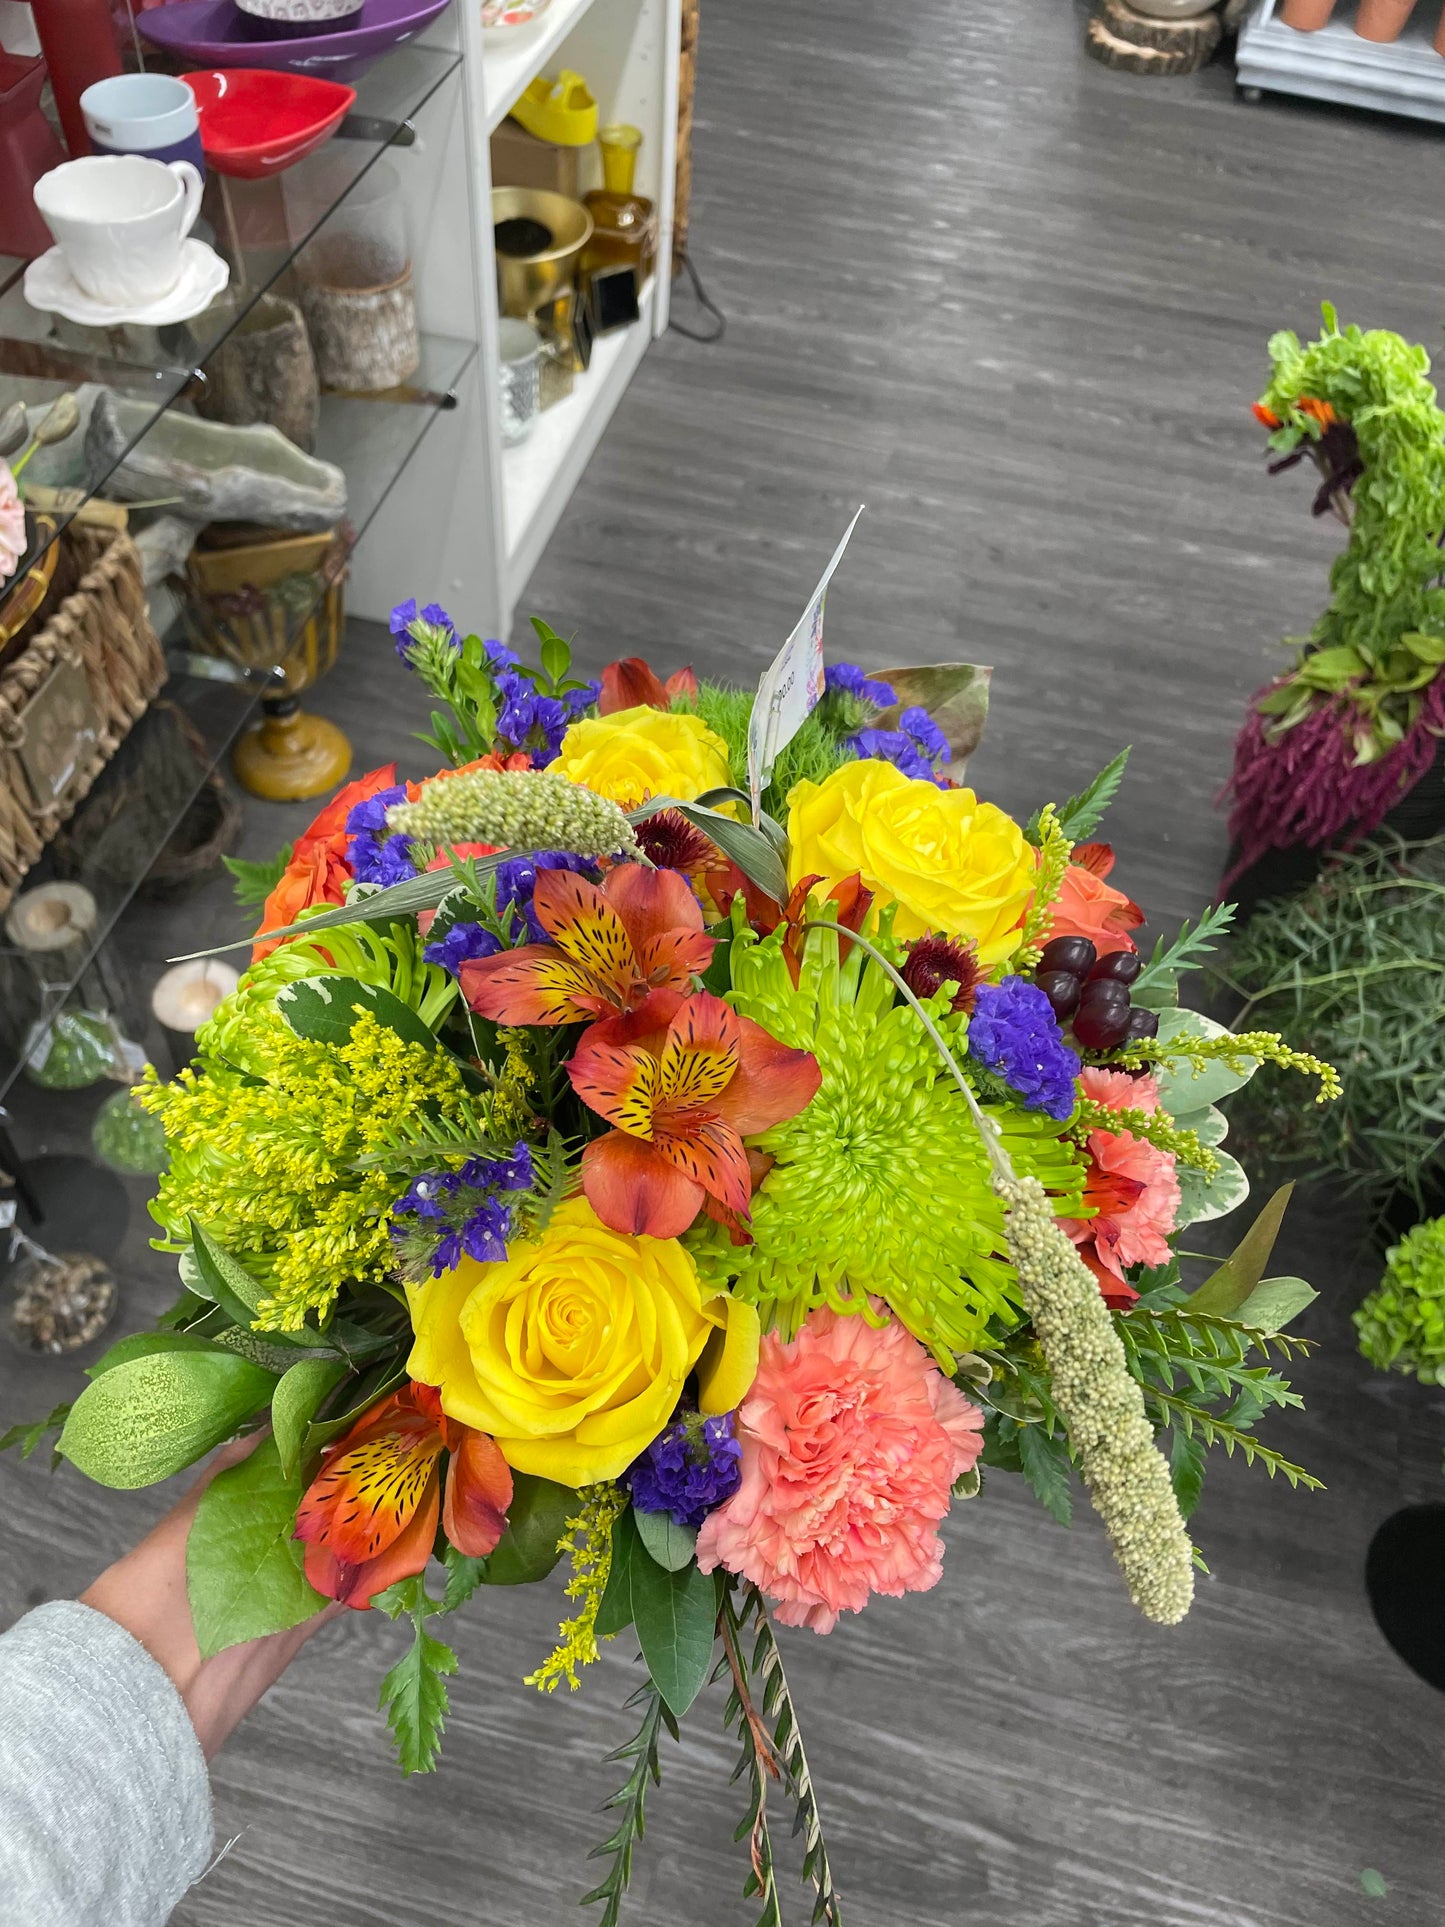 Surprise me - Designer's Choice Floral Arrangement